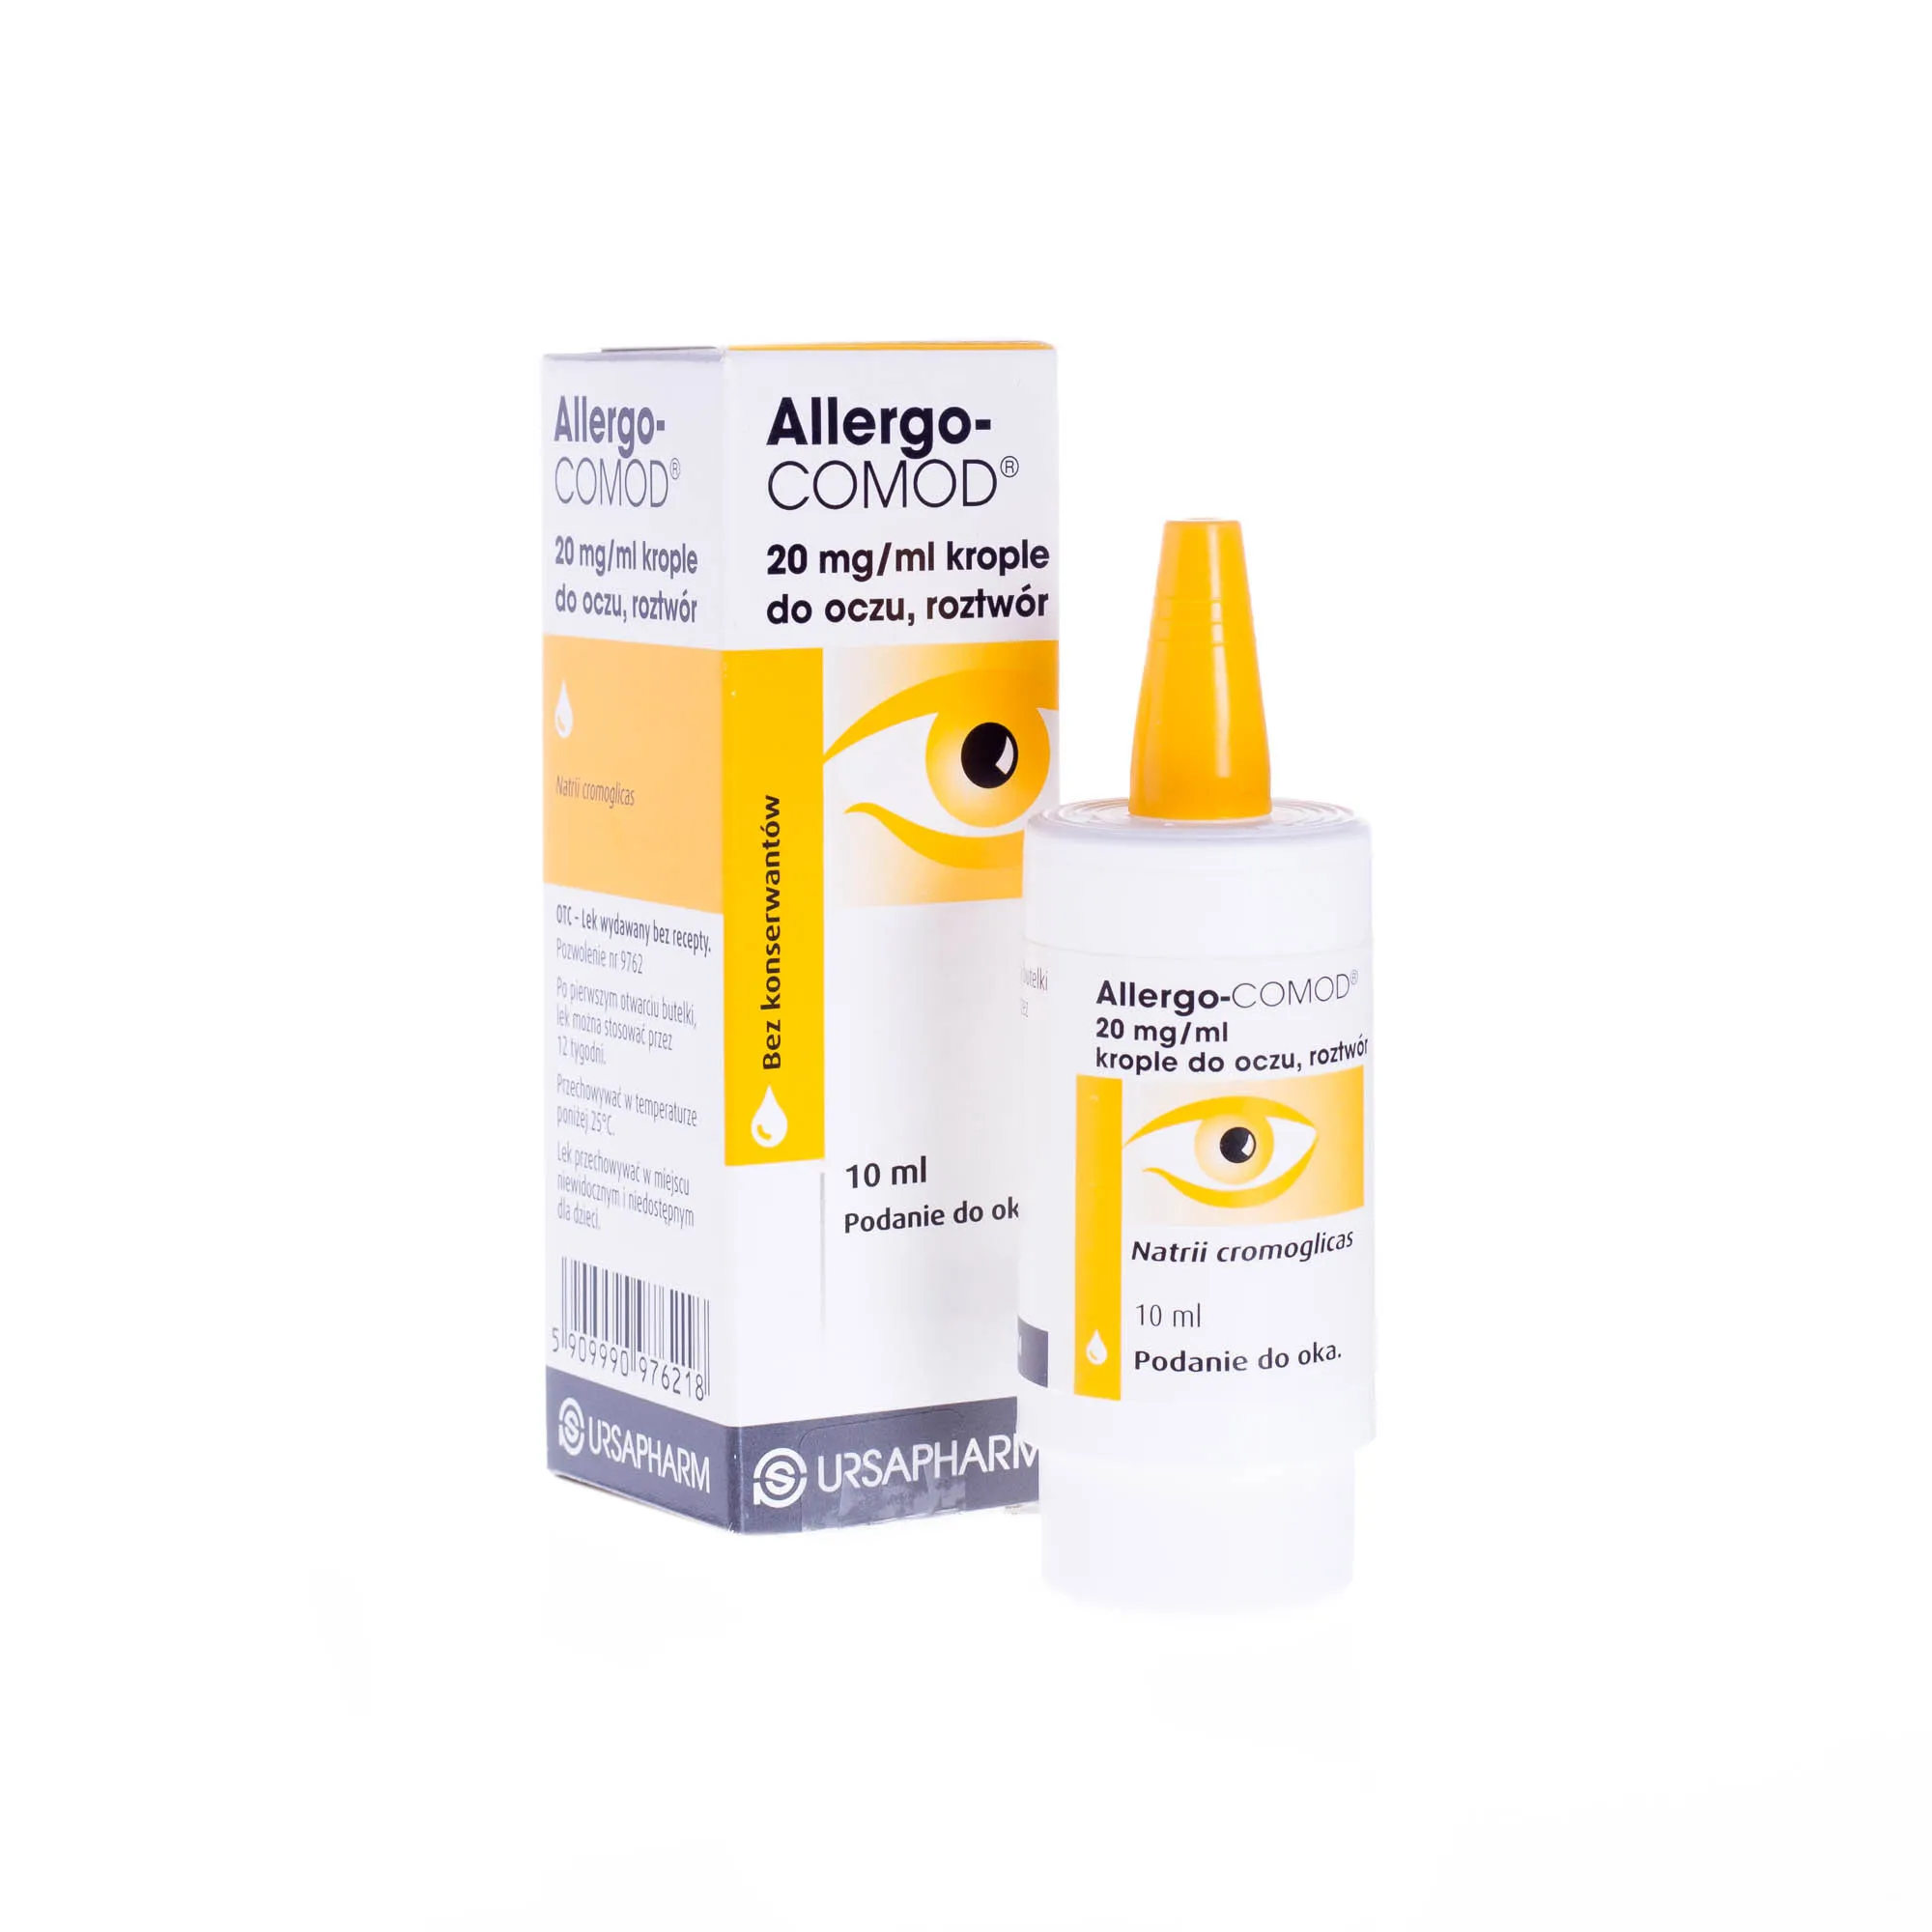 Allergo-COMOD 20 mg/ml krople do oczu, roztwór, 10 ml Podanie do oka